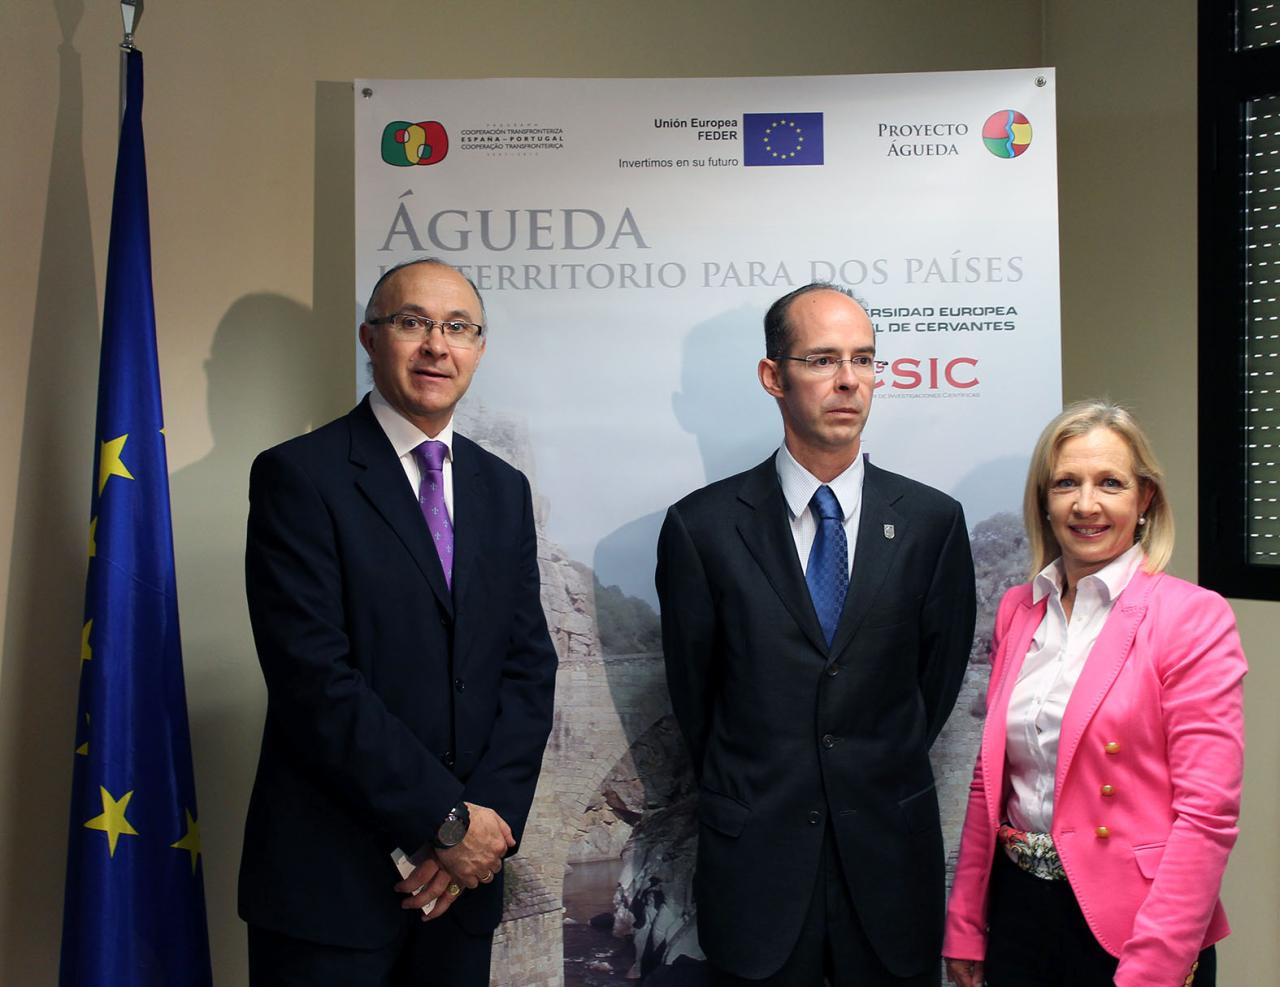 El delegado del Gobierno y el rector de la Universidad ‘Miguel de Cervantes’ presentan en Valladolid el Proyecto Águeda, financiado con fondos Feder